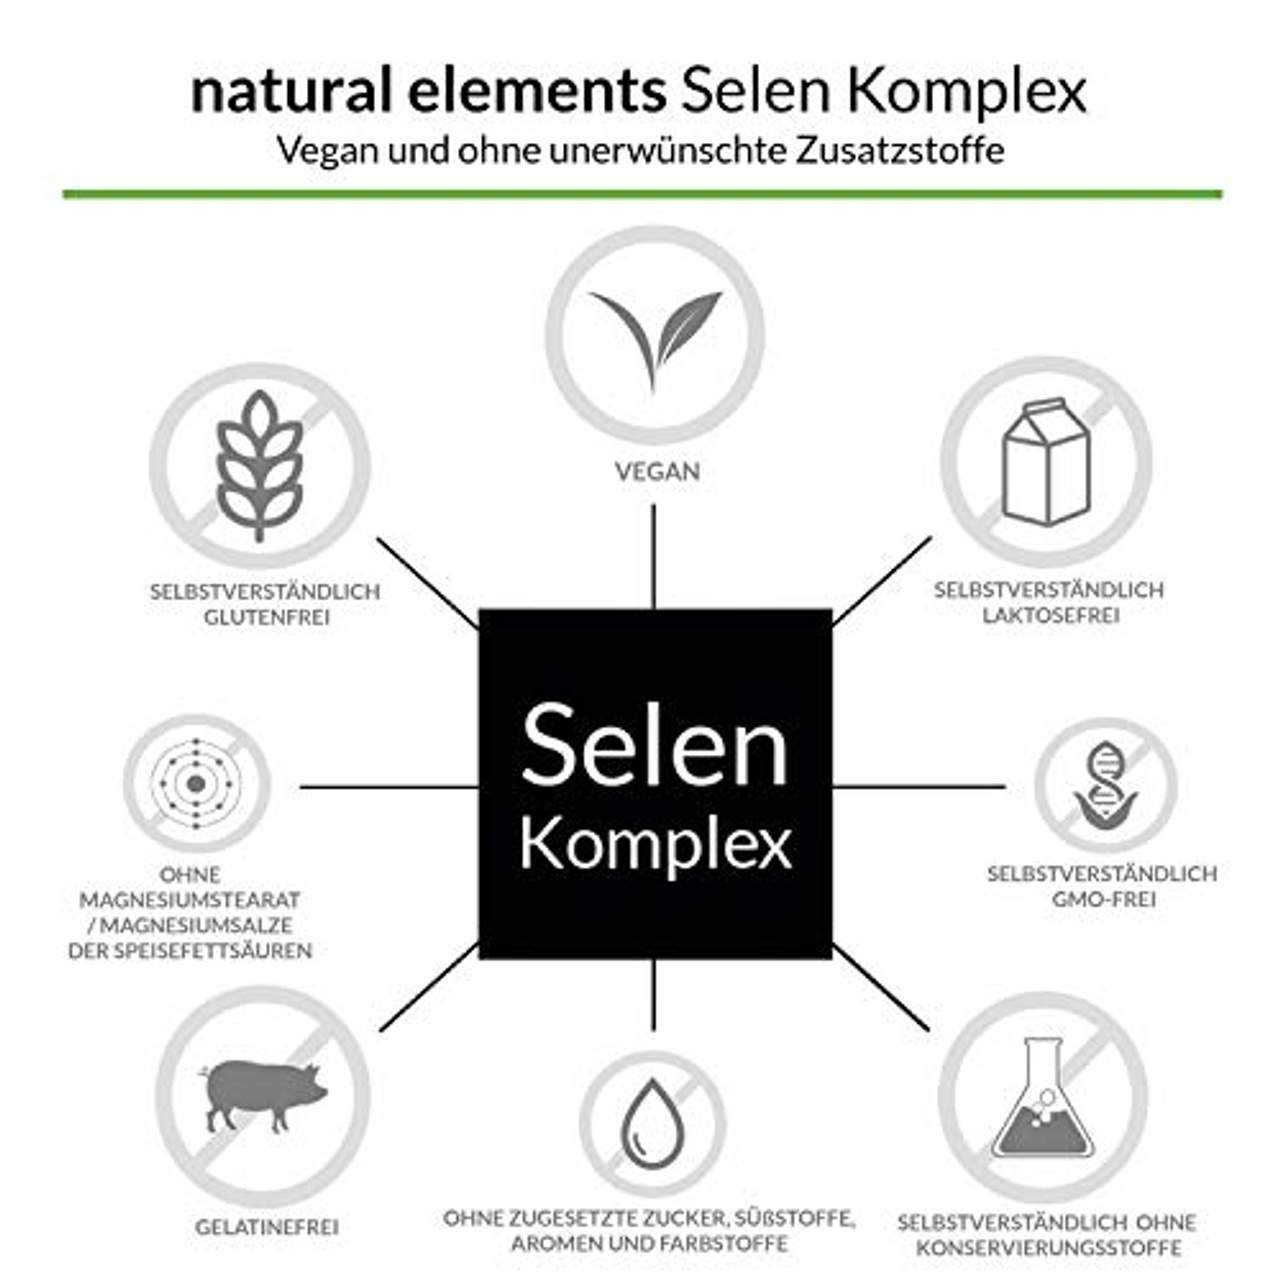 natural elements Selen Komplex